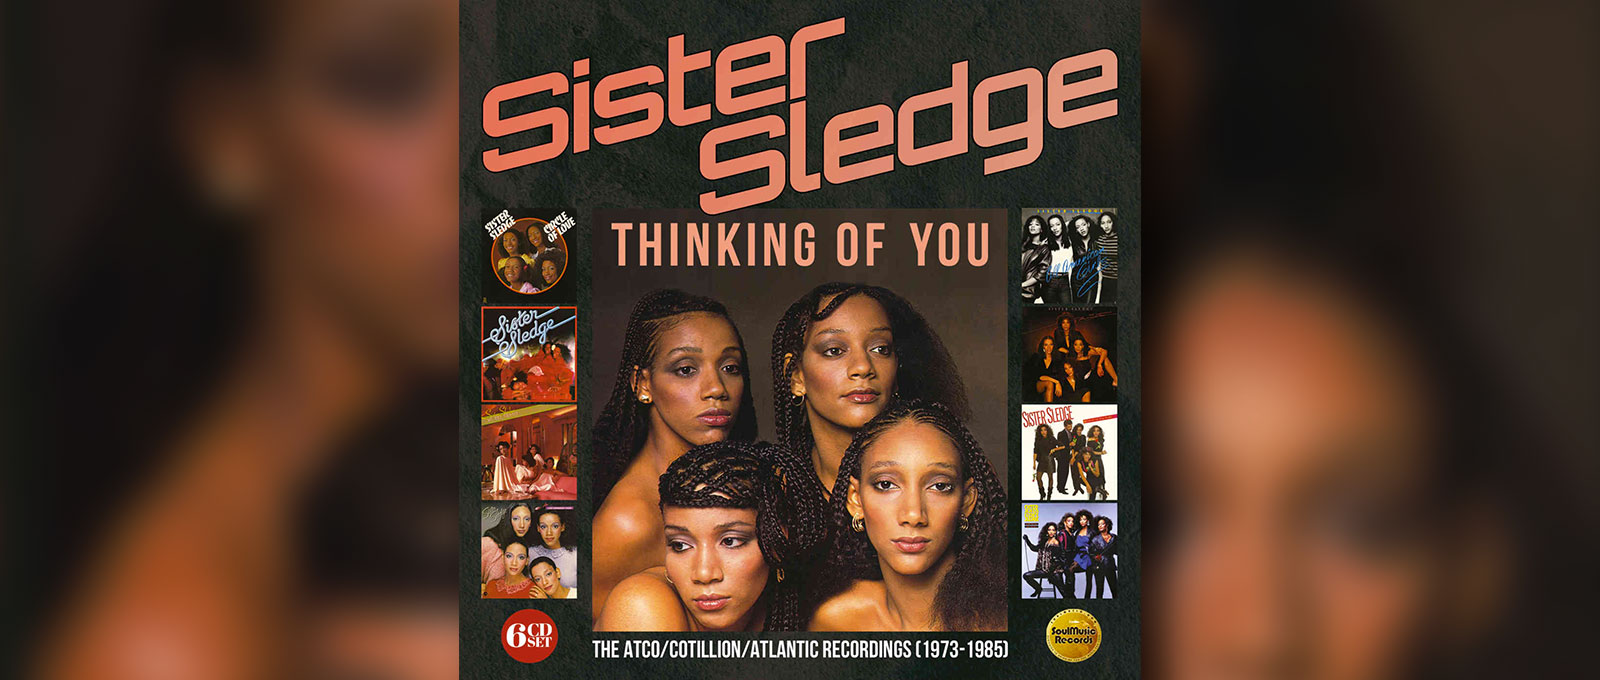 Sister Sledge chronique des 6CD